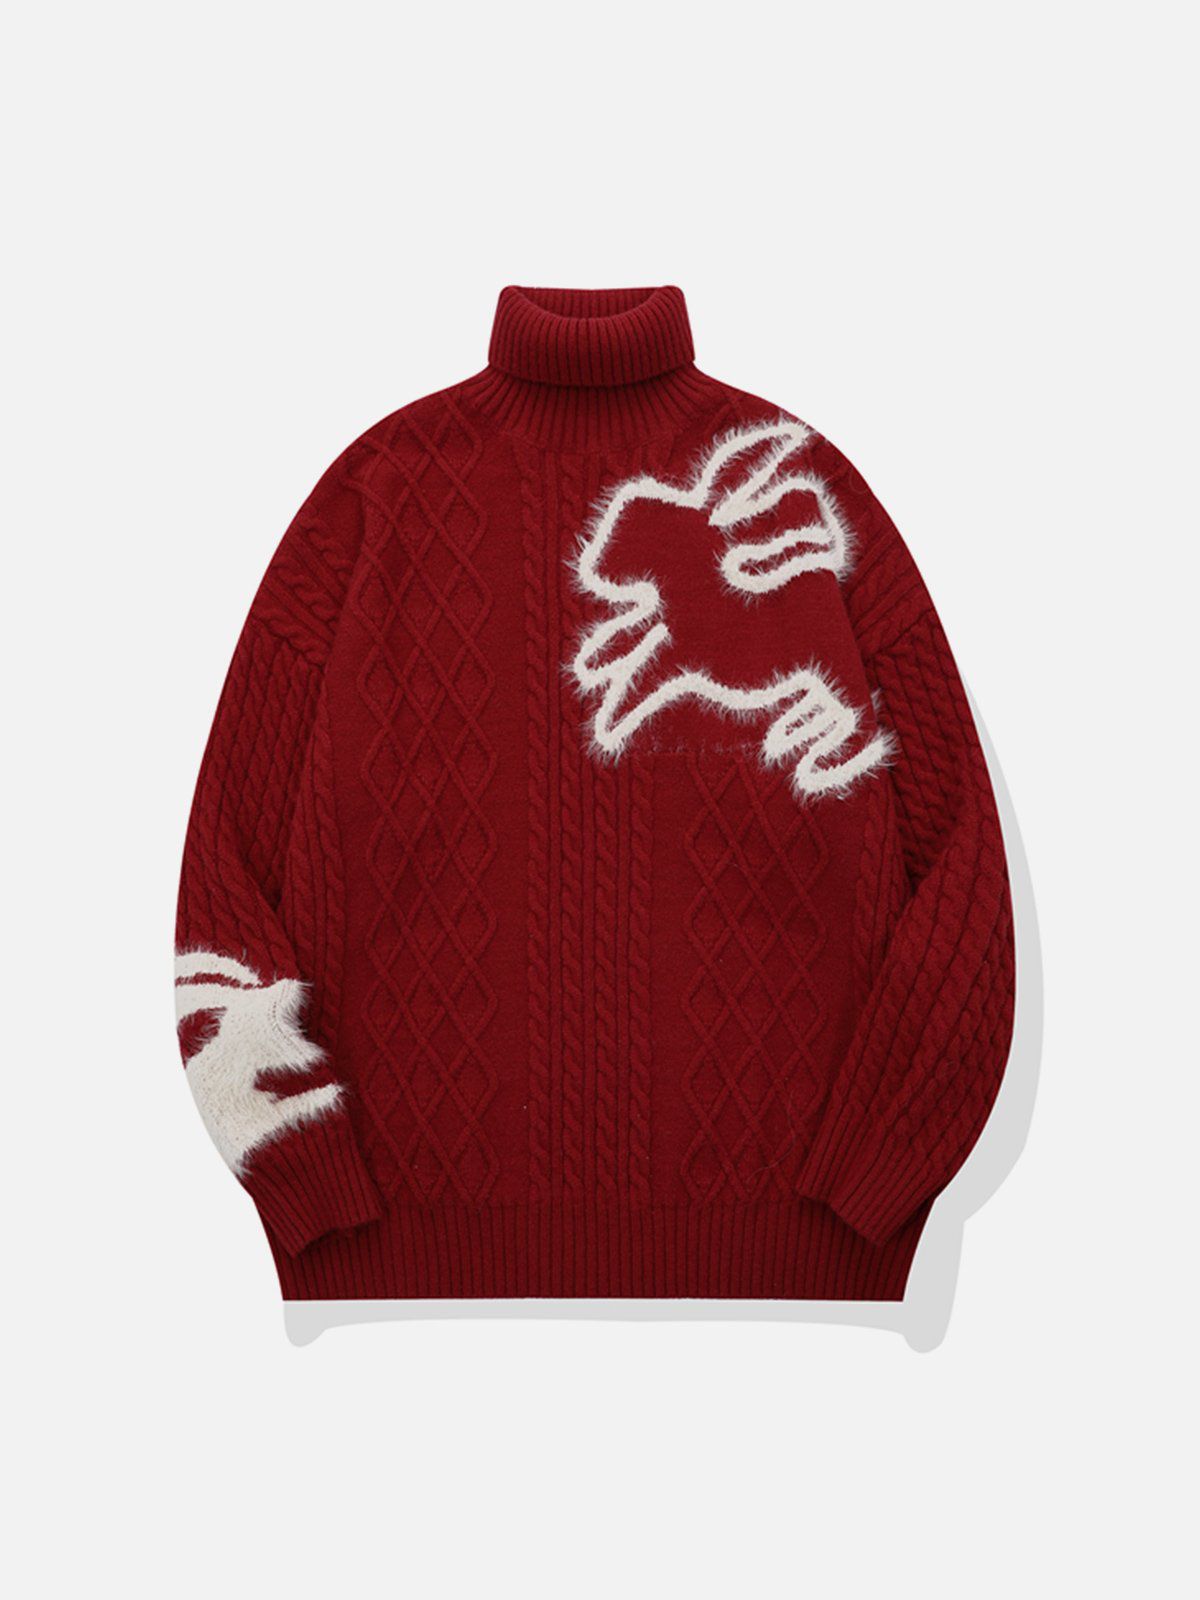 Eprezzy® - Rabbit Embroidery Sweater Streetwear Fashion - eprezzy.com